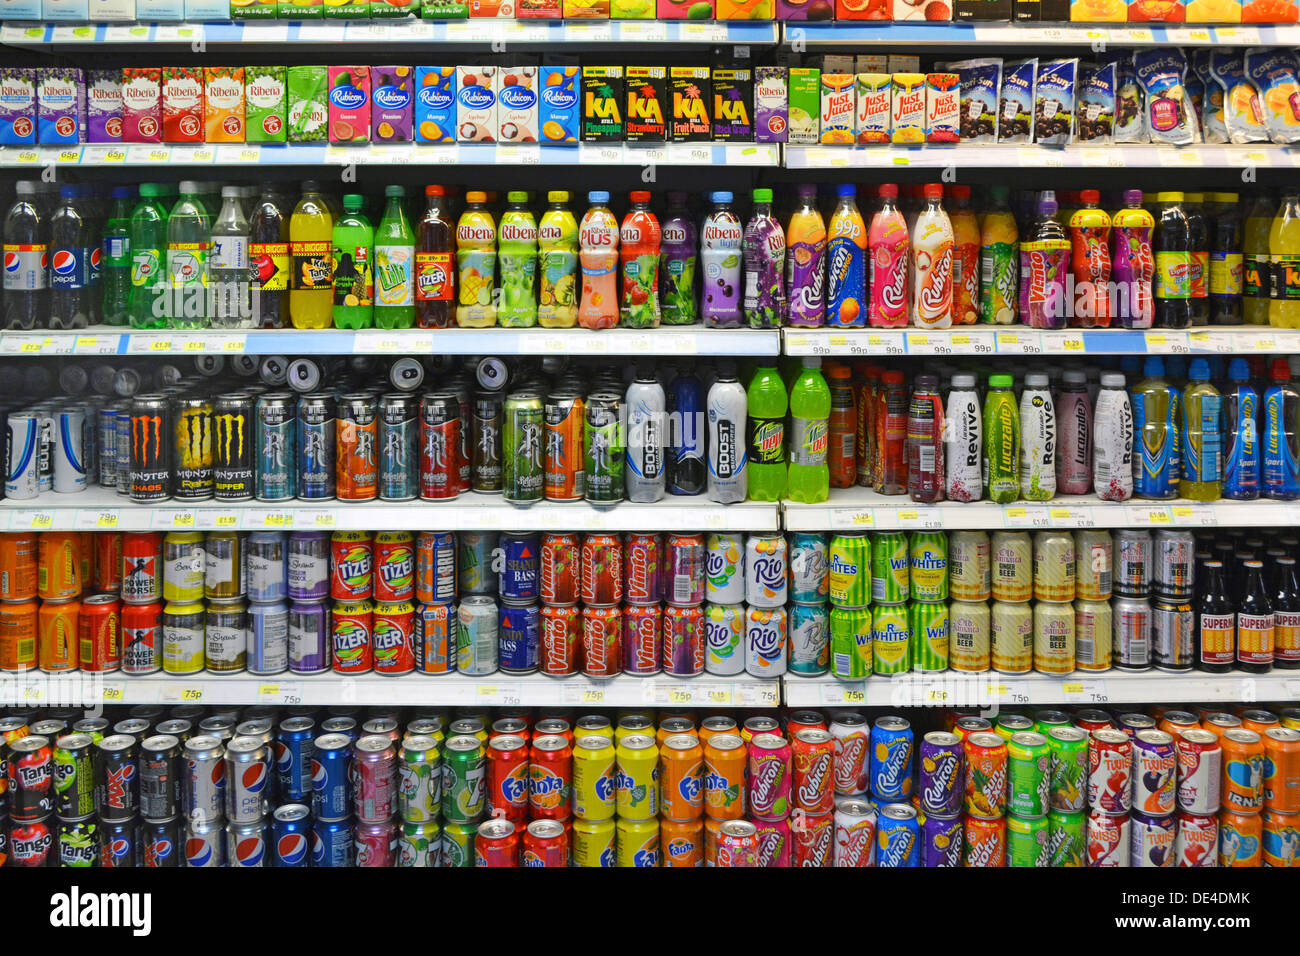 Canettes et bouteilles de boissons gazeuses taxe possible sur certaines boissons gazeuses sucrées à haute teneur en sucre et gazeuses co2 vues sur les étagères à l'intérieur de la boutique de proximité Londres Angleterre Royaume-Uni Banque D'Images